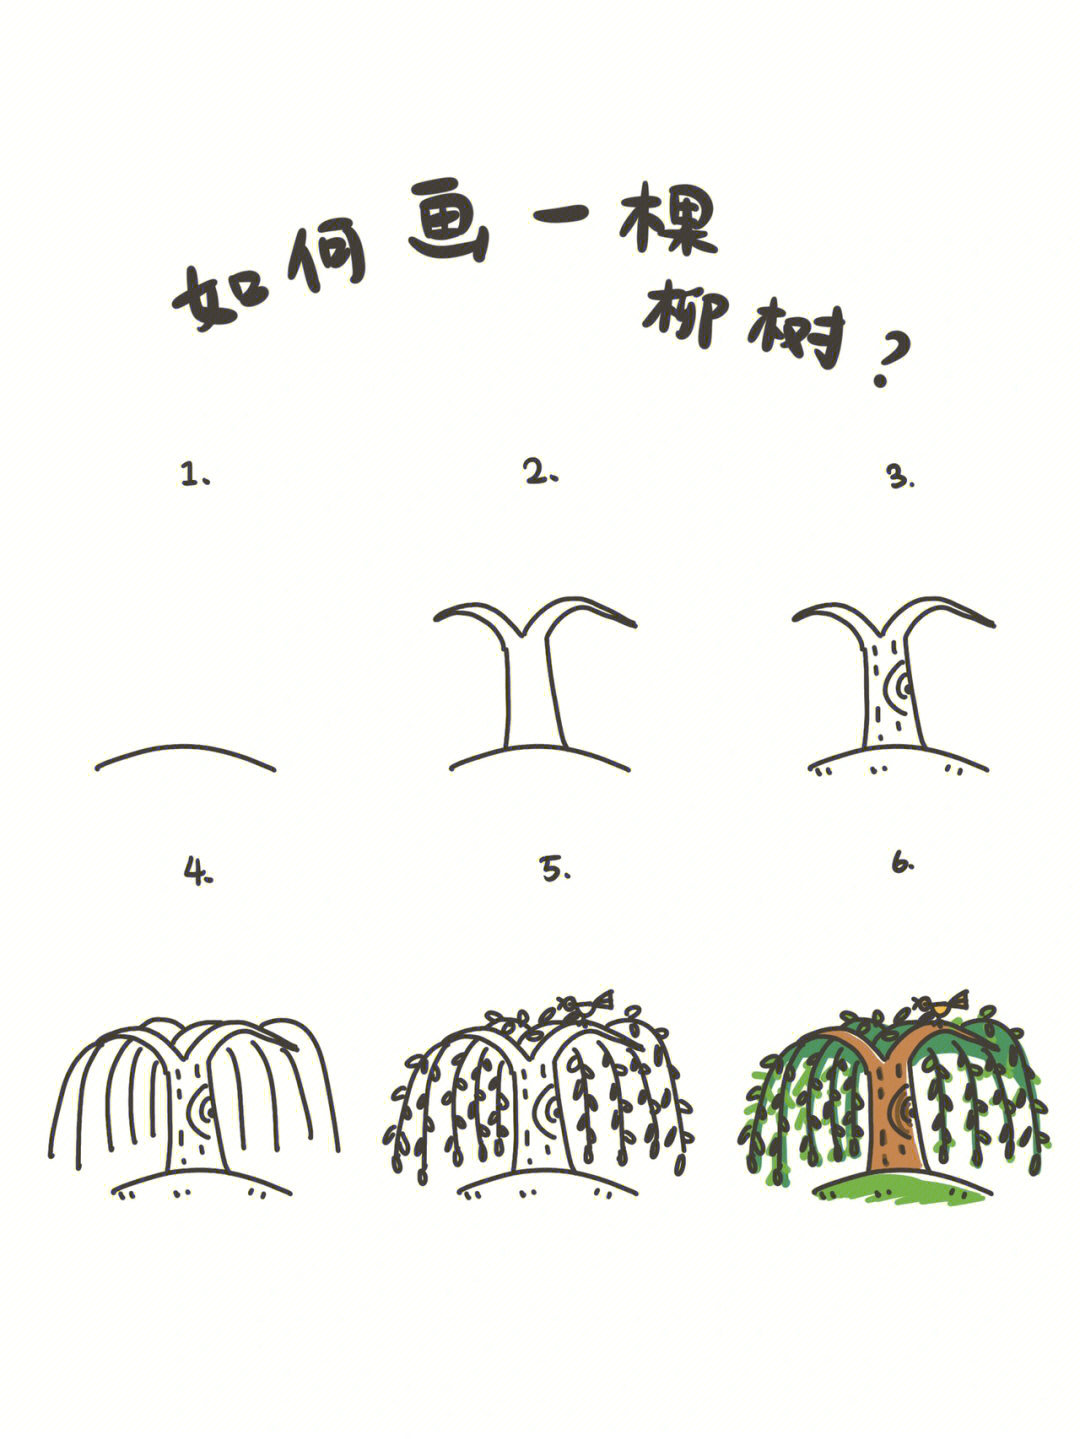 柳树简单画法图片